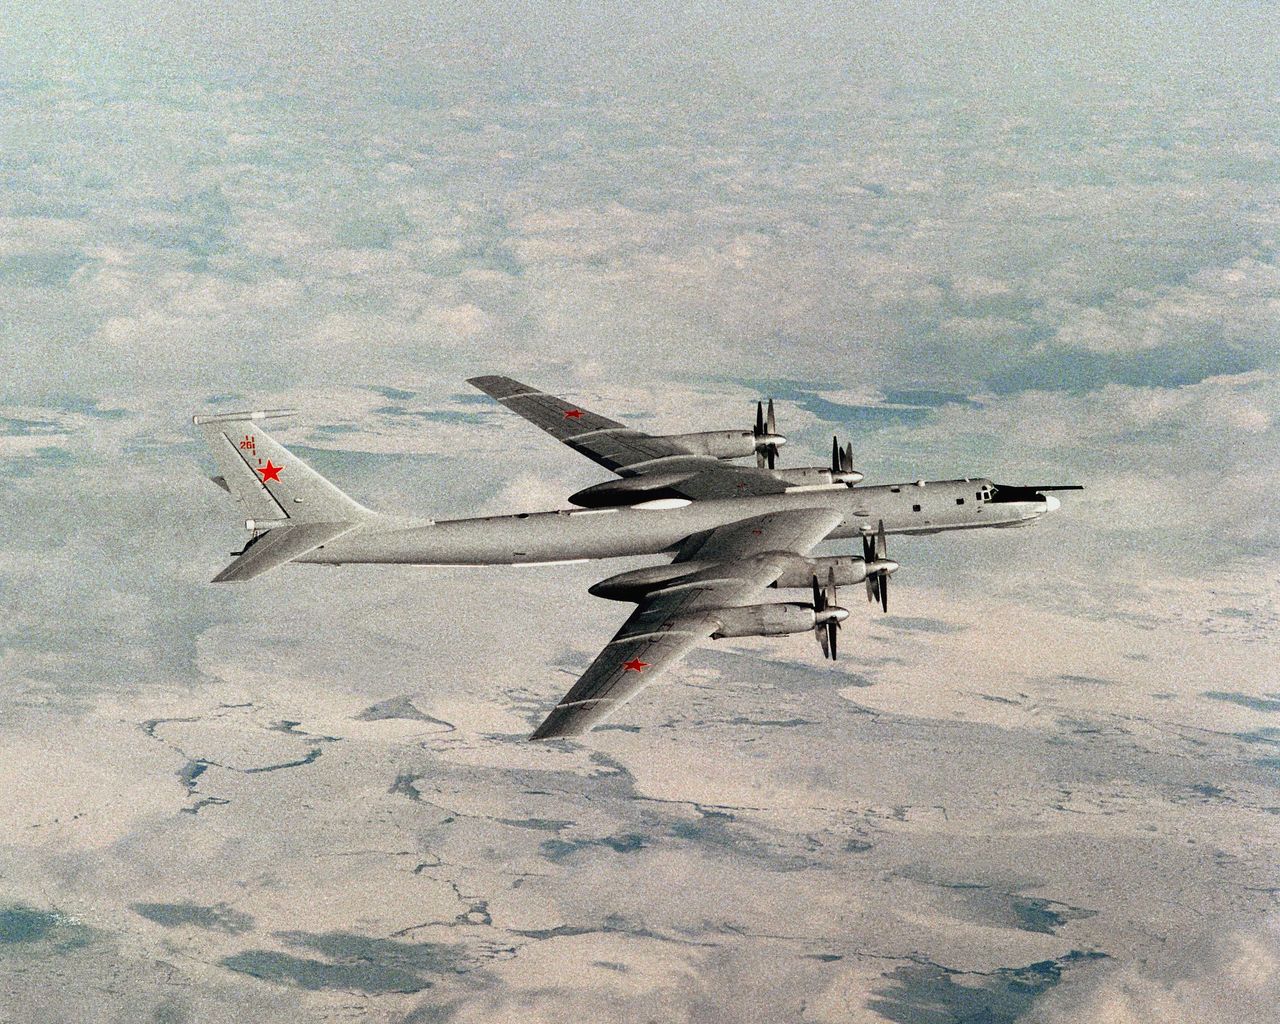 Wersja rozwojowa Tu-95 - Tu-142